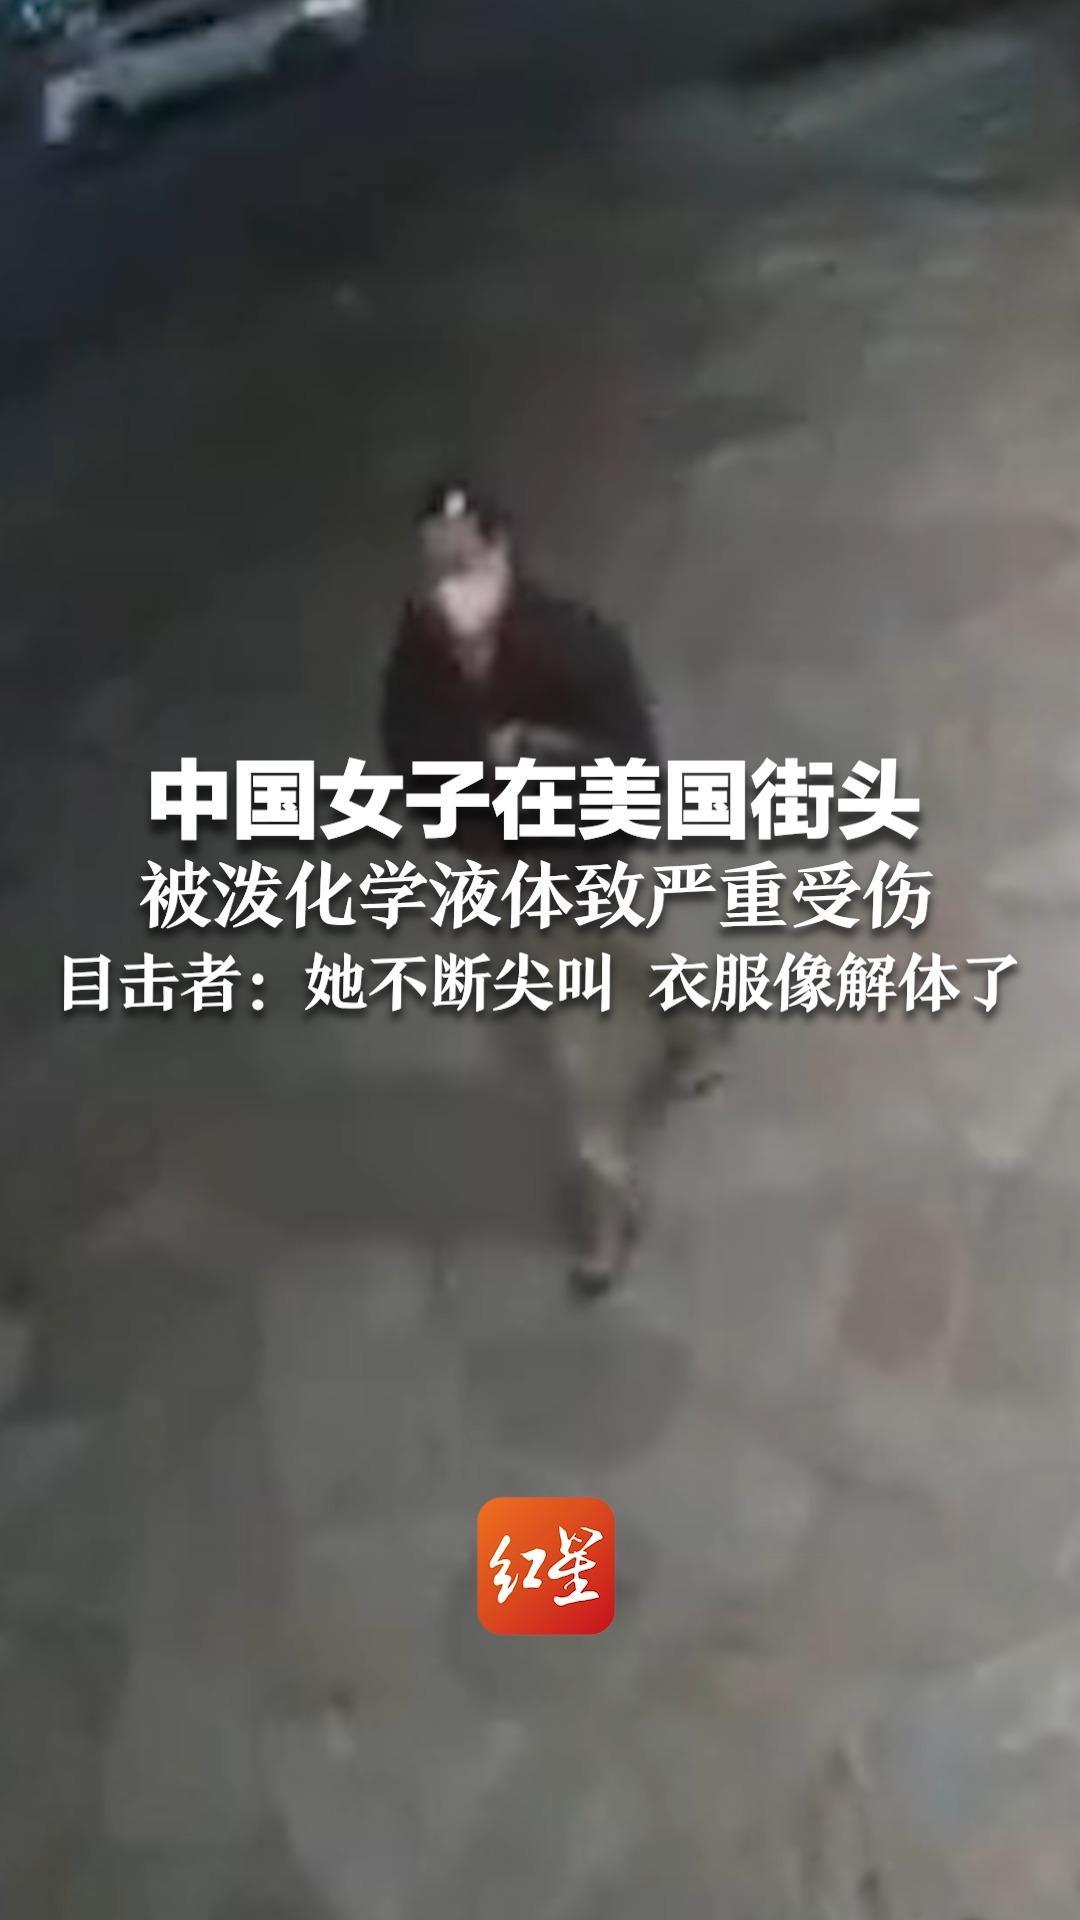 中国女子在美国街头 被泼化学液体致严重受伤 目击者：她不断尖叫 衣服像解体了